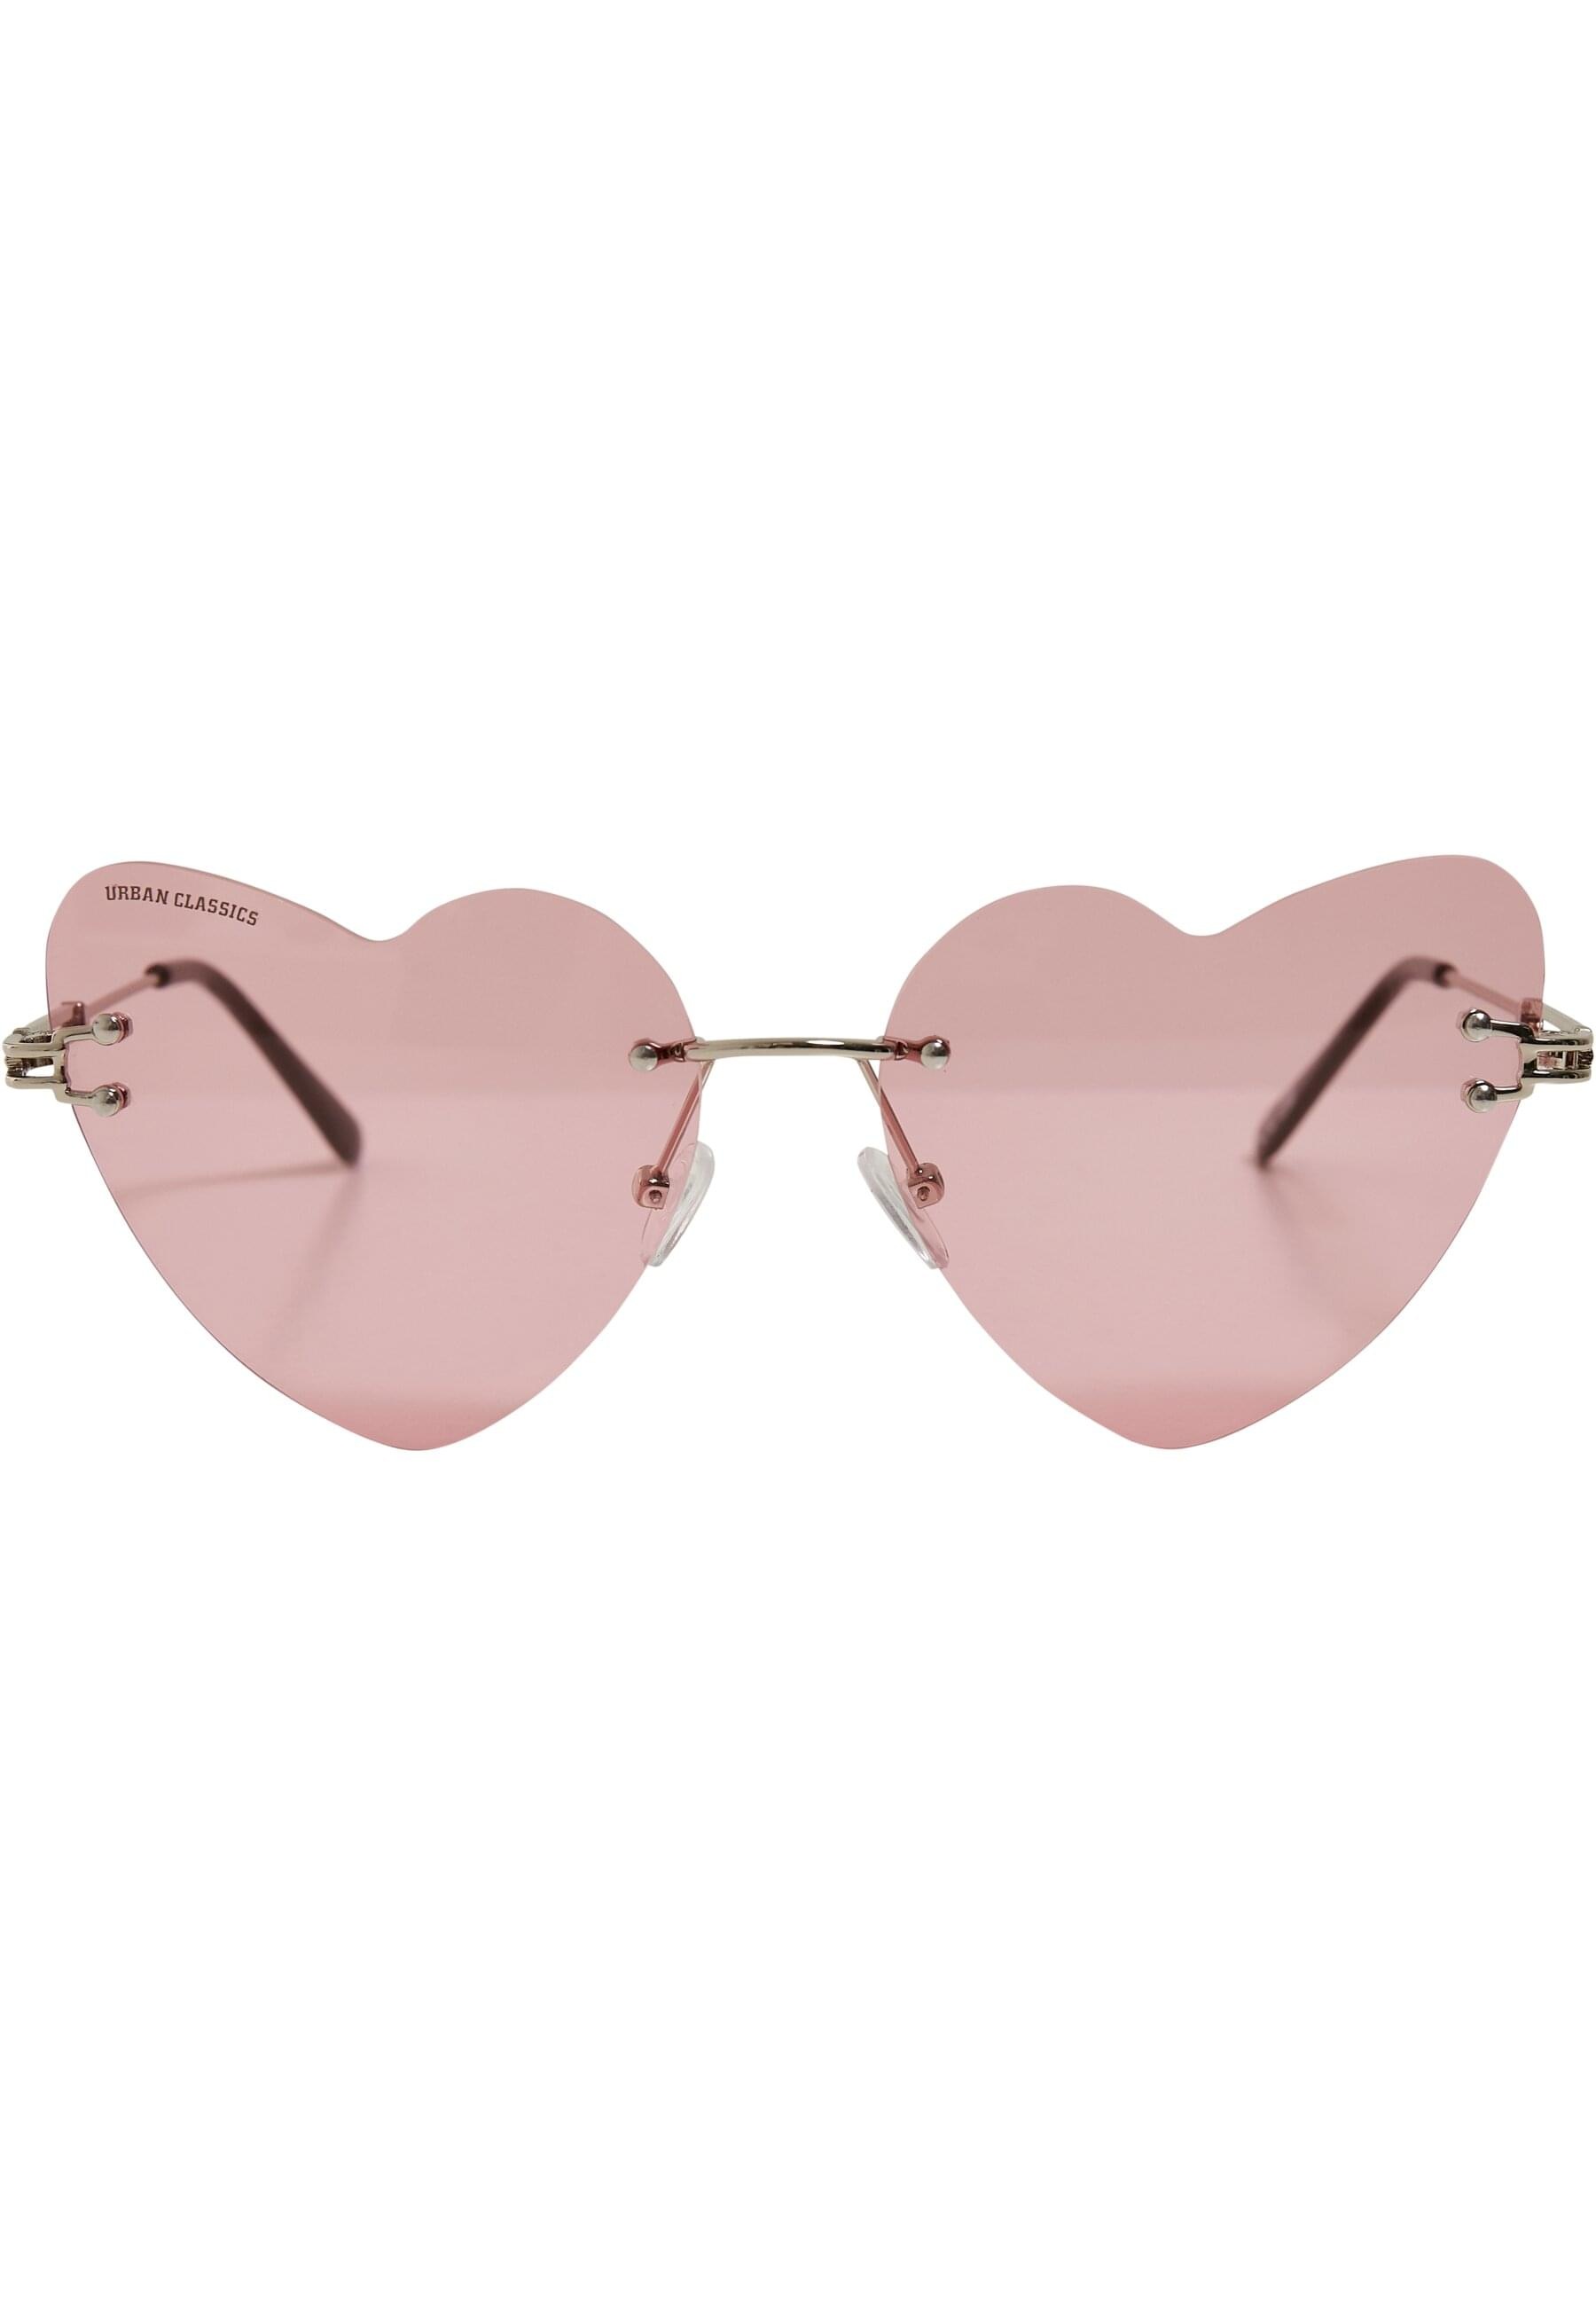 BAUR | Sonnenbrille Heart URBAN kaufen Sunglasses online »Unisex Chain« CLASSICS With